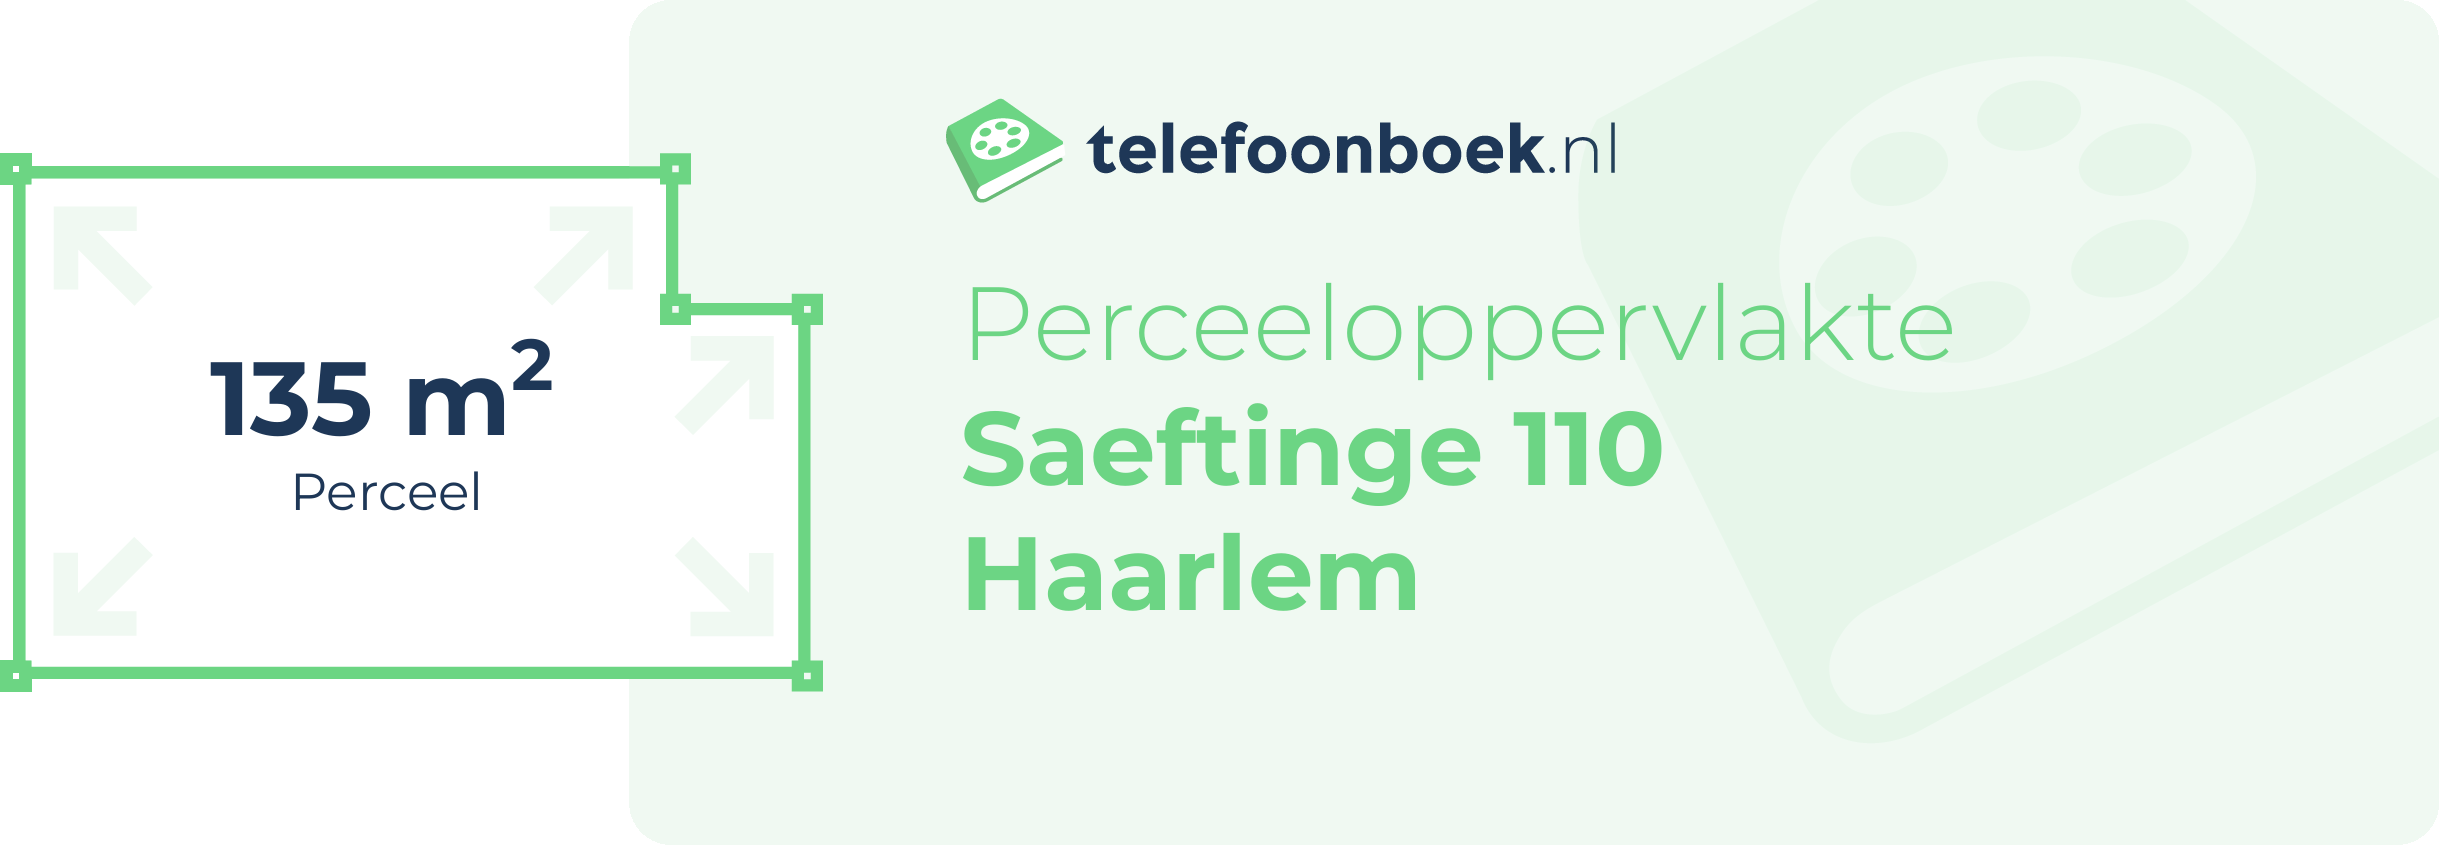 Perceeloppervlakte Saeftinge 110 Haarlem